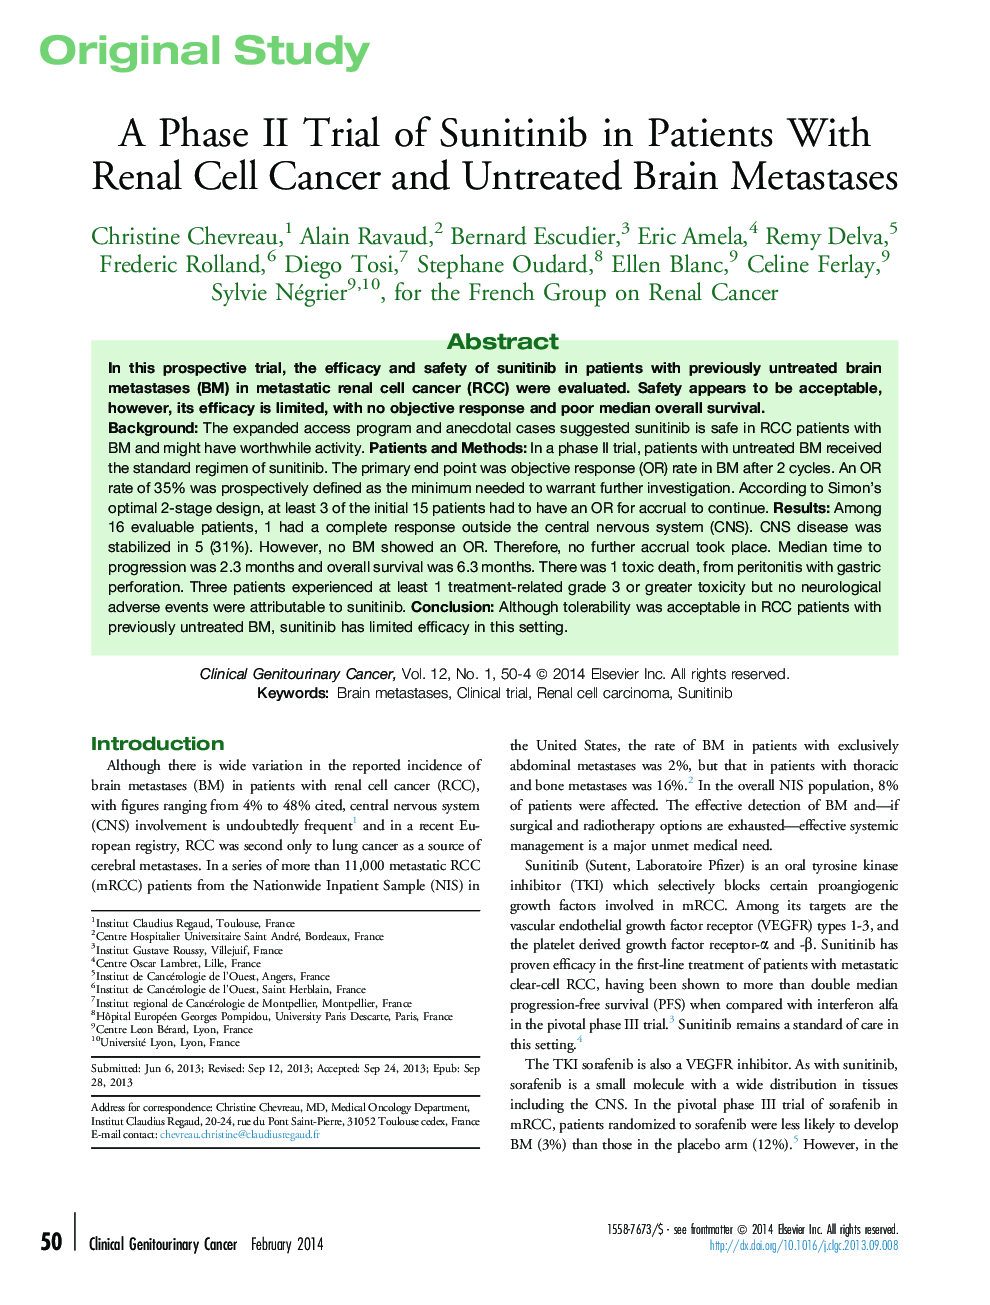 یک مطالعه فاز دوم سونیتینیب در بیماران مبتلا به سرطان سلول های کلیه و متاستازهای مغز نابارور 